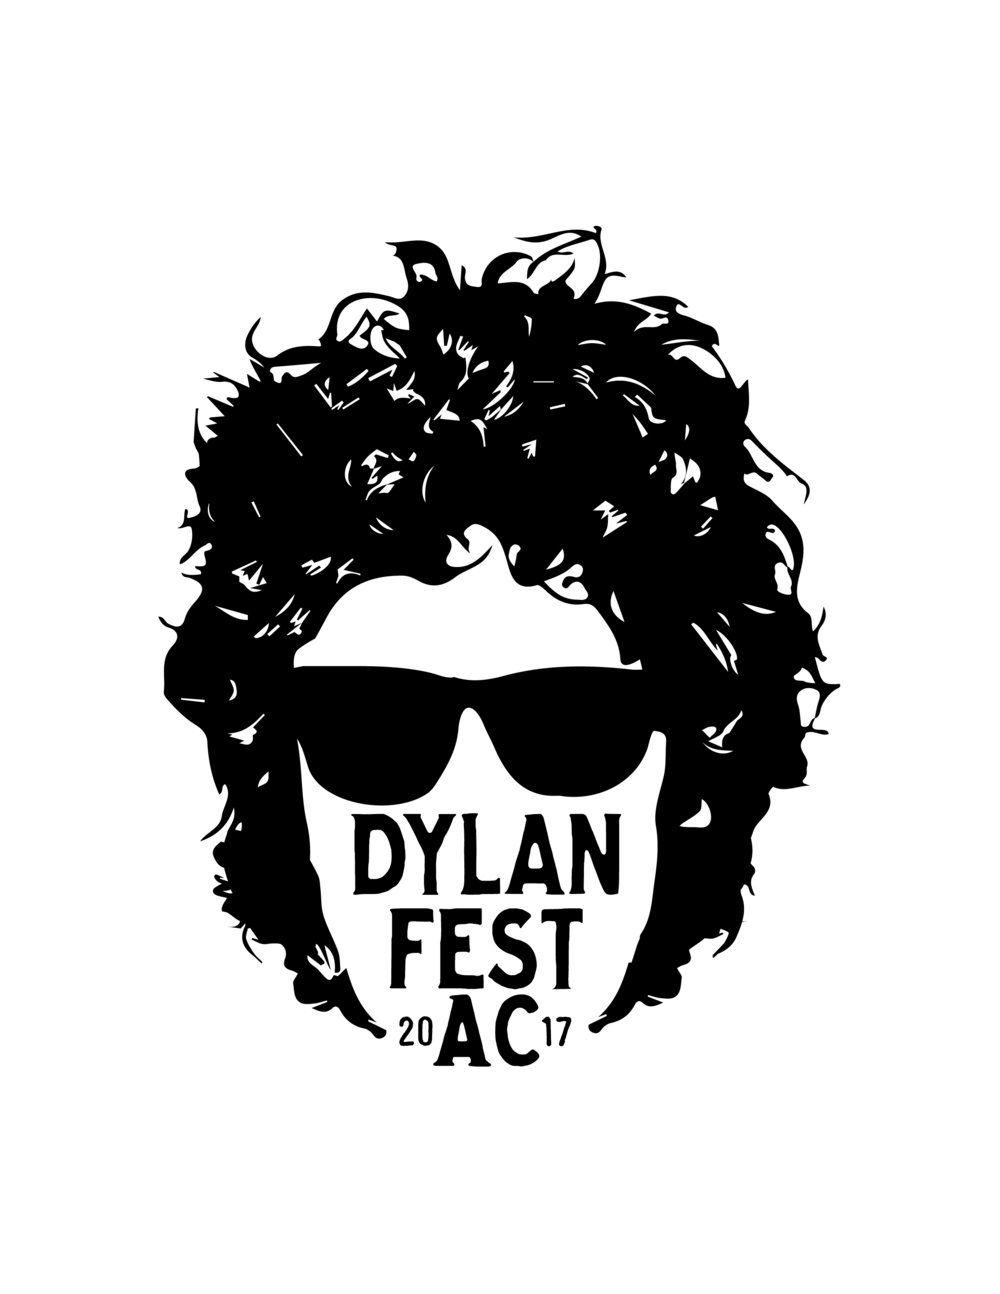 Bob Dylan Logo - VISIONS OF DYLAN FEST AC — Dylan Fest AC 2018